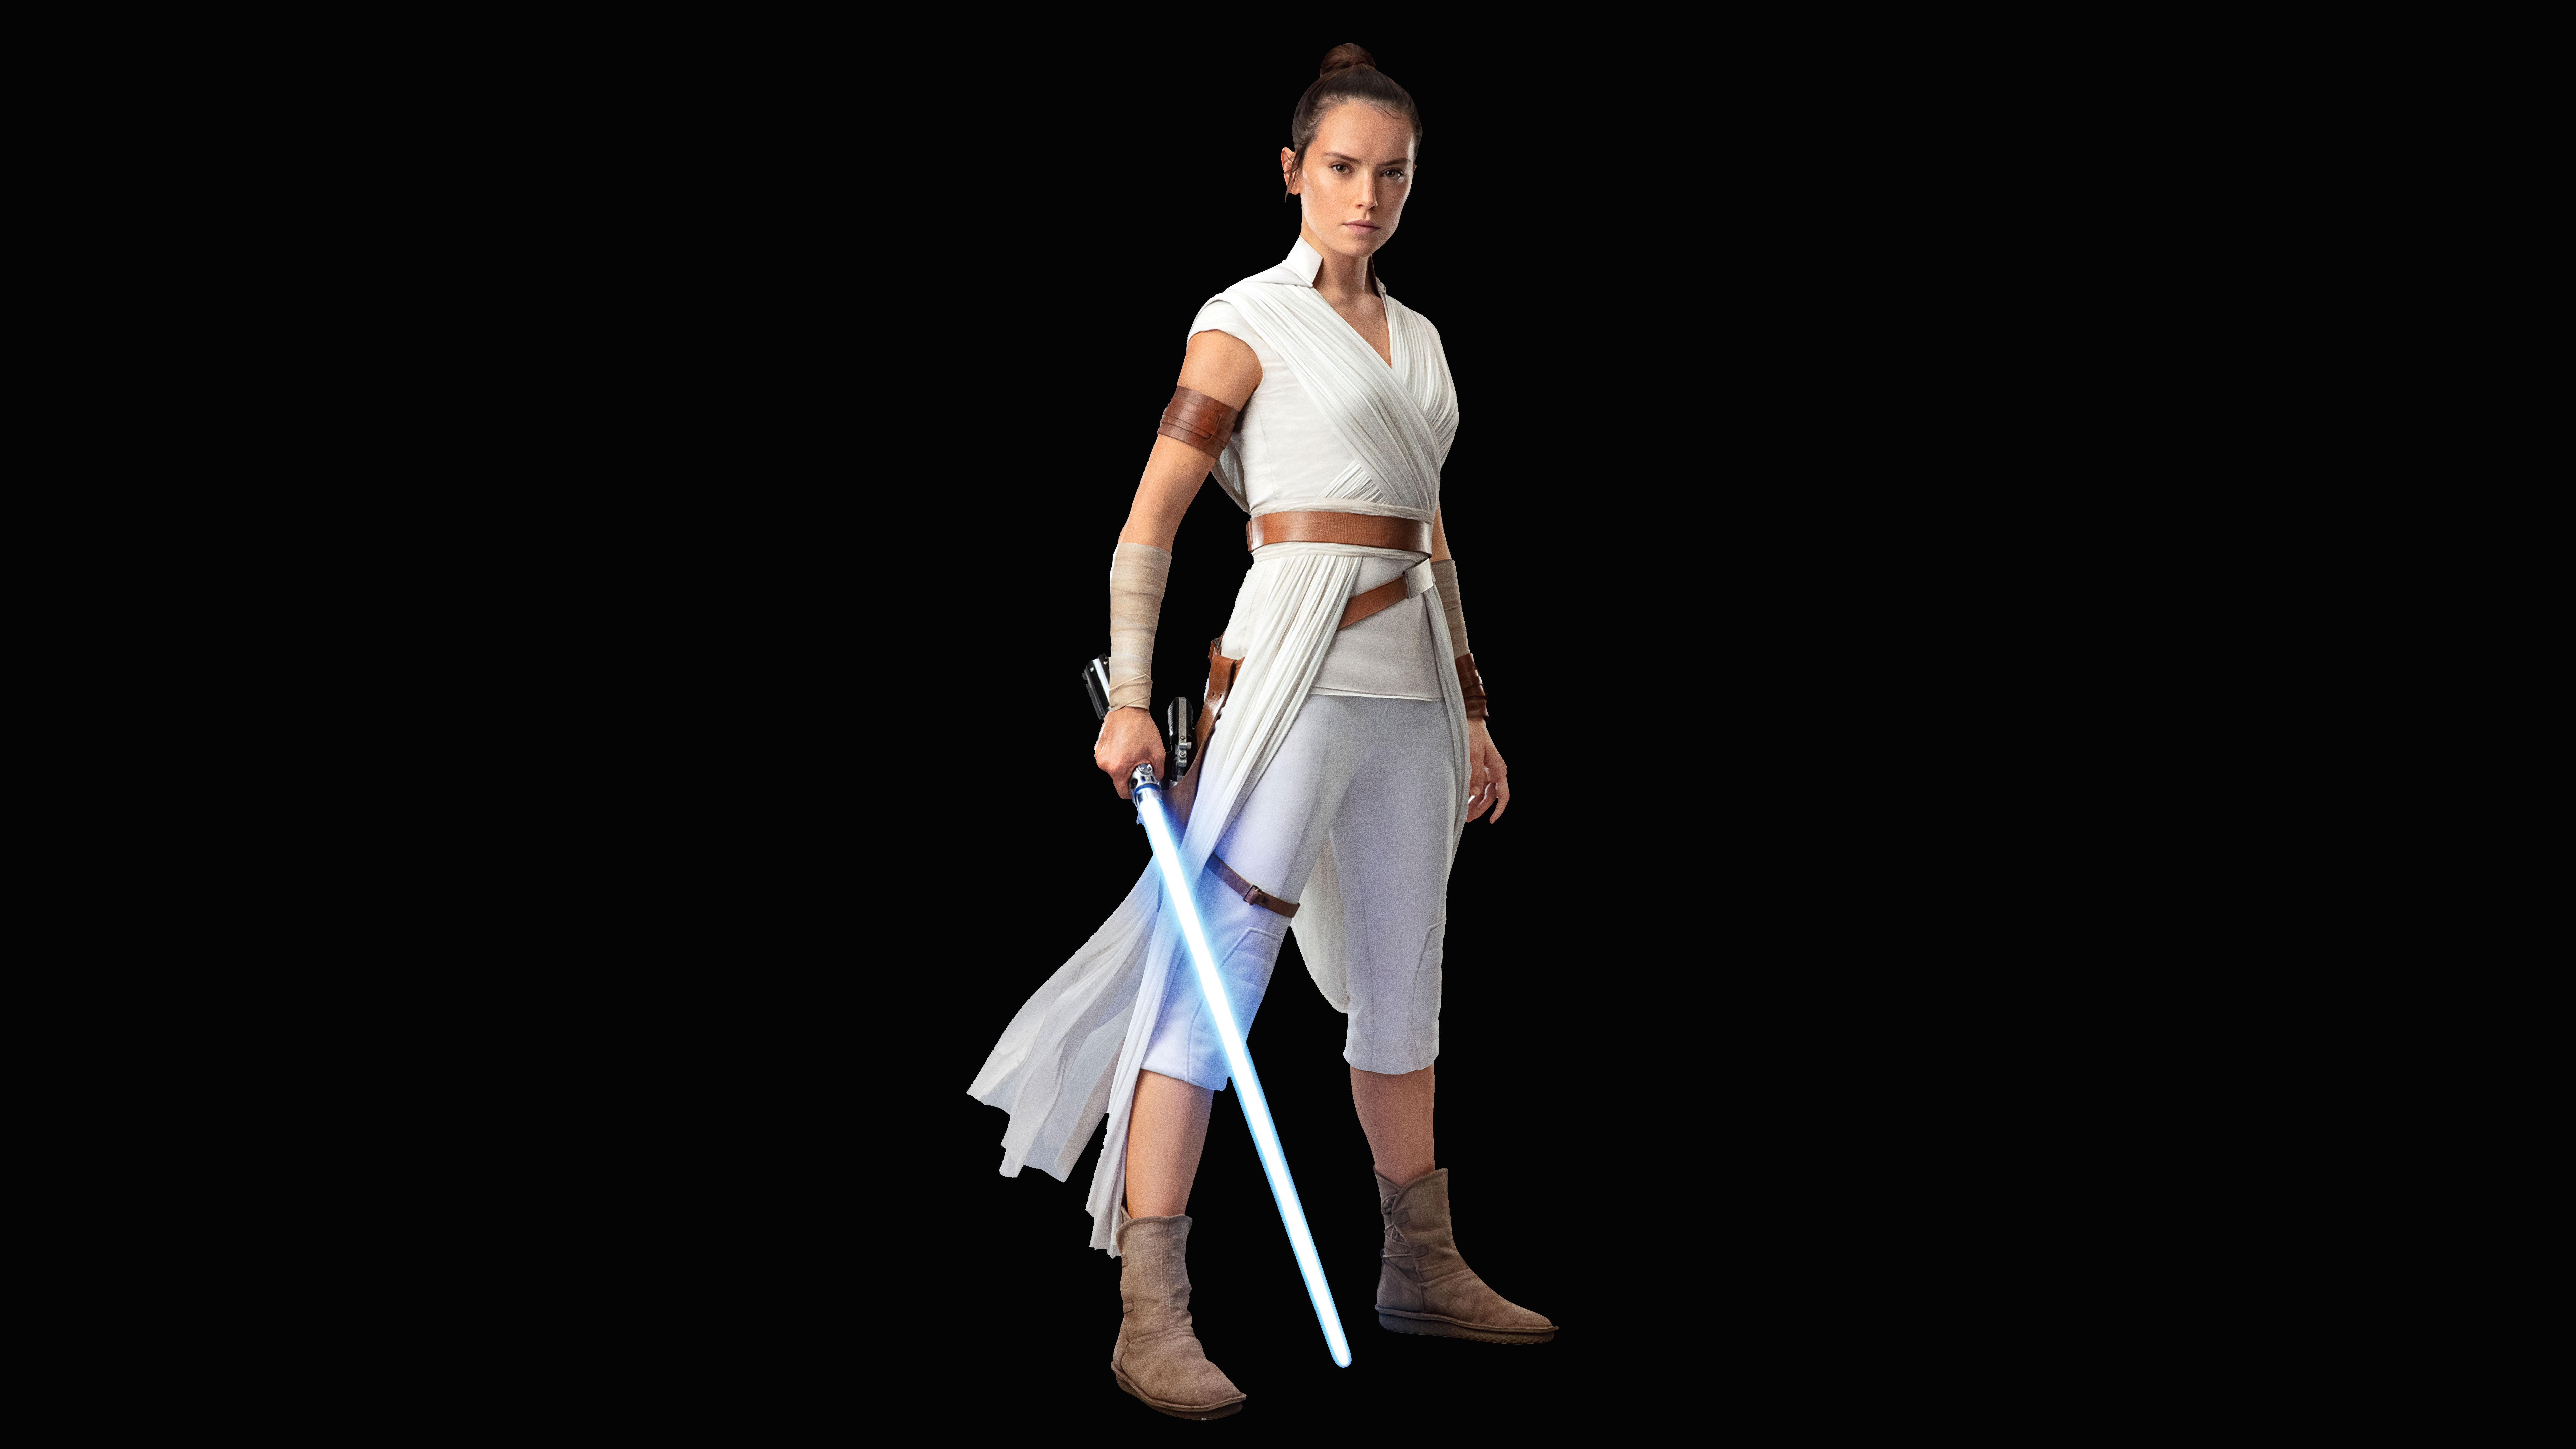 Rey Daisy Ridley in Star Wars The Rise of Skywalker 4K 8K